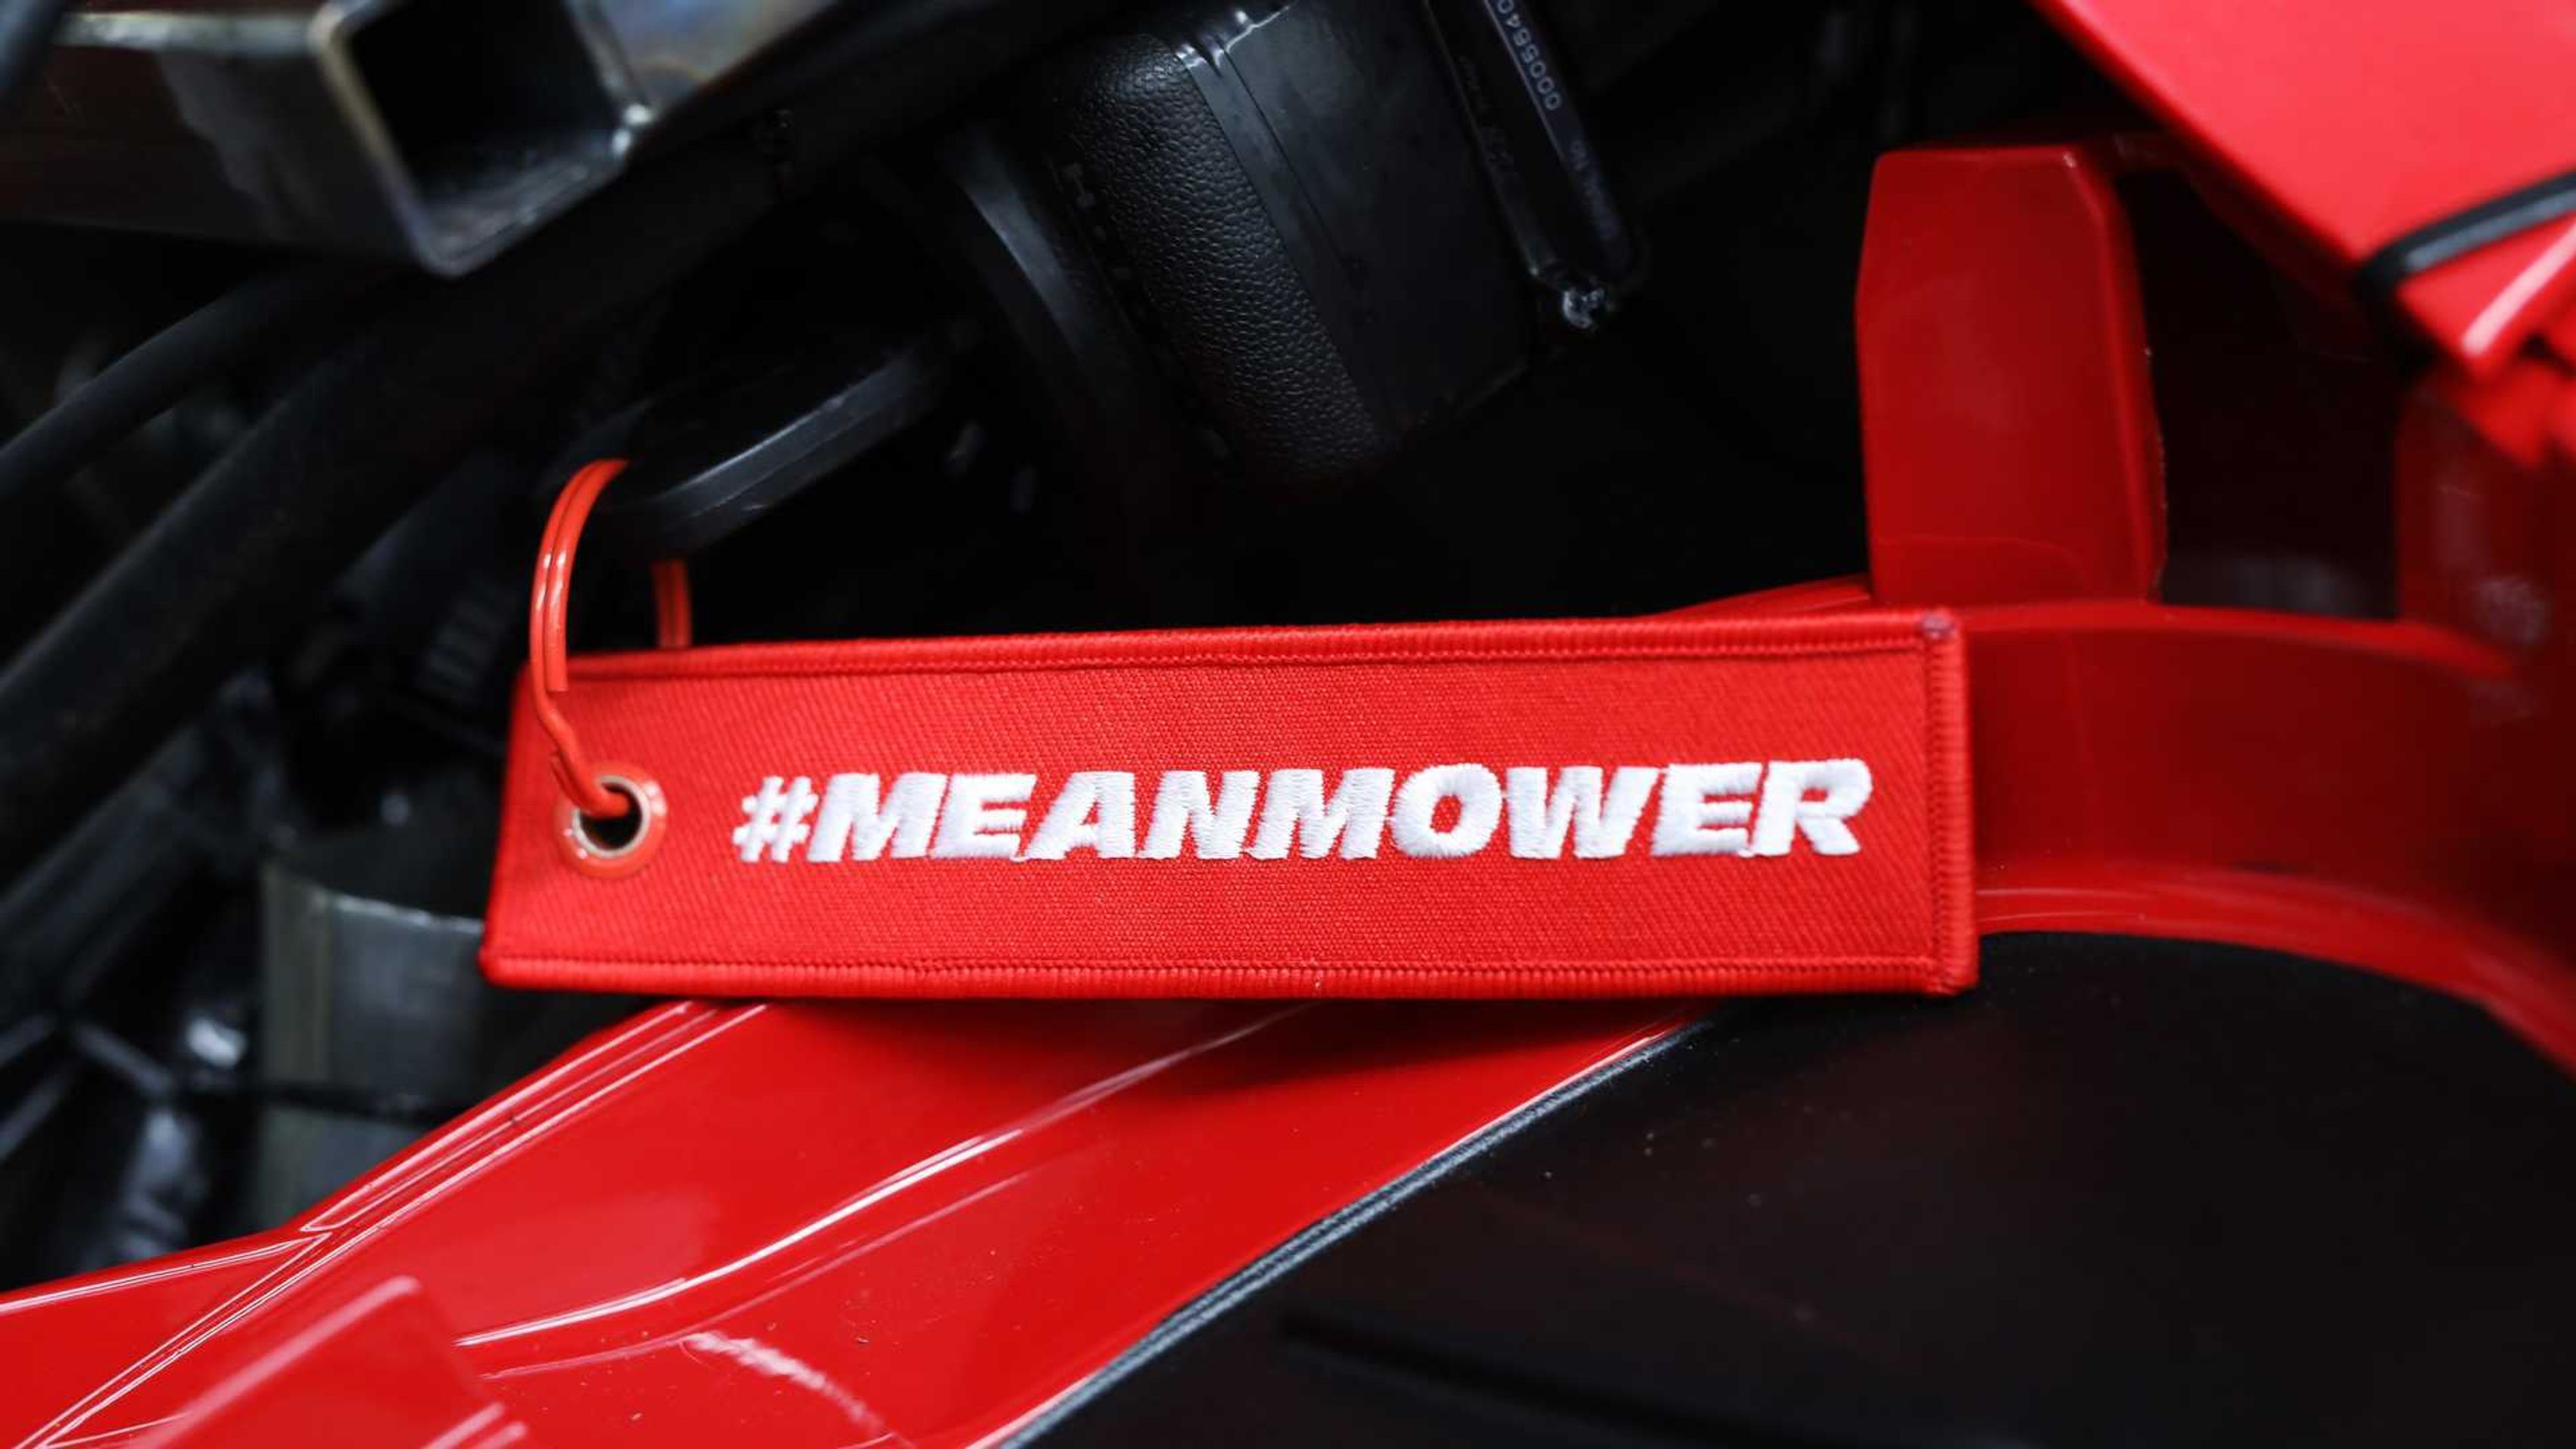 Honda Mean Mower V2 - 10 - Fotogalerie: Nejrychlejší sekačka na světě (6/9)